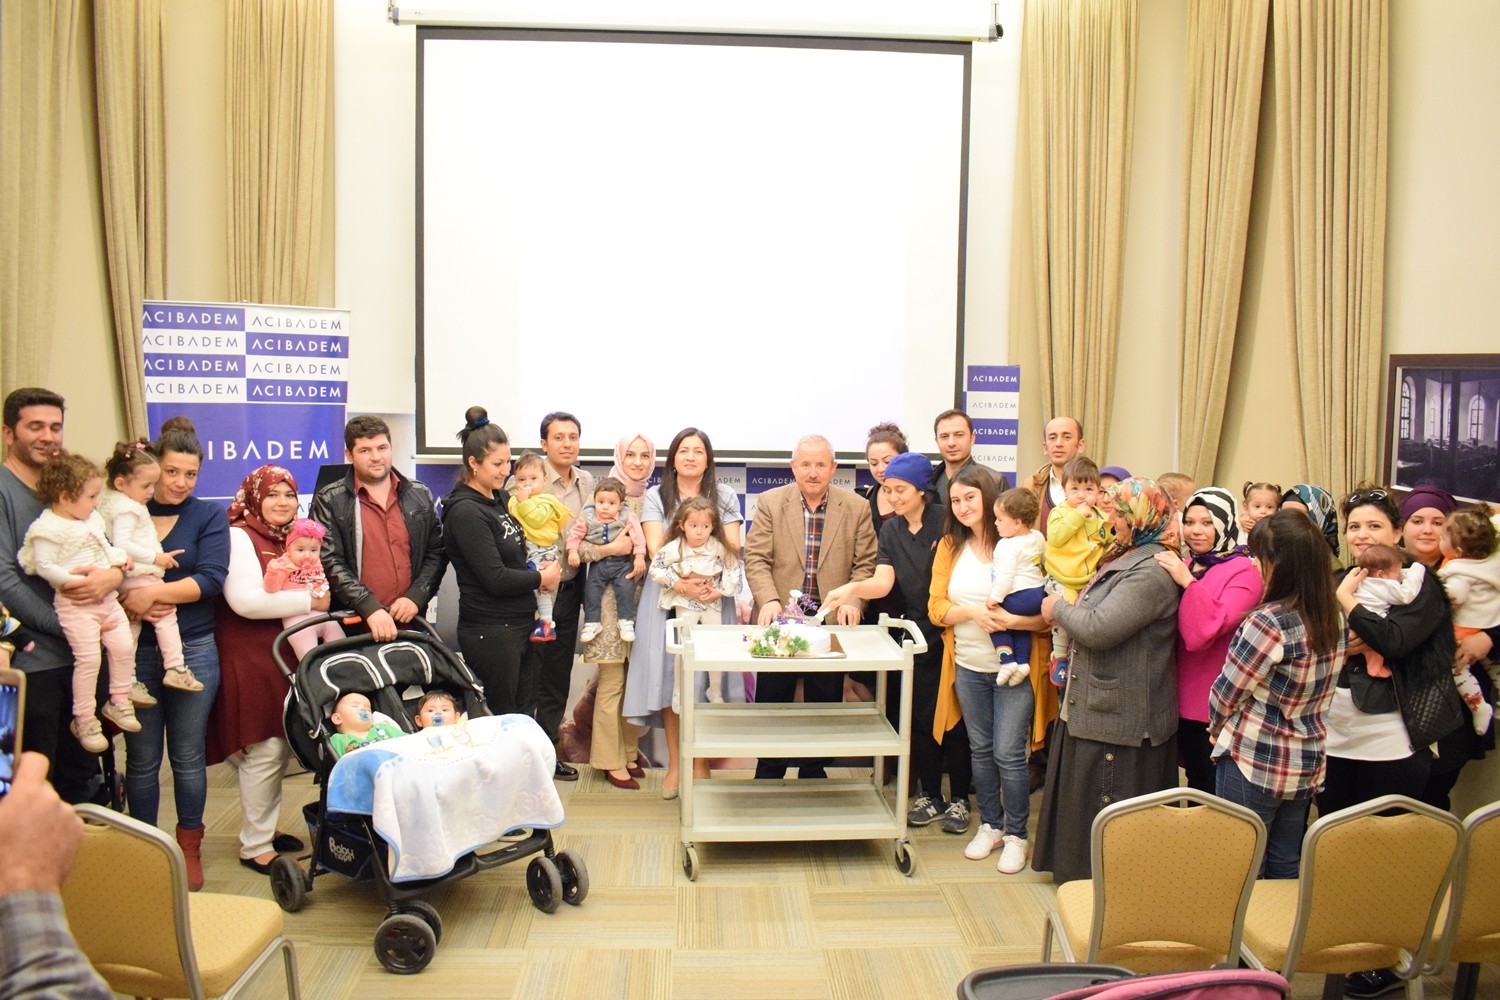 Acıbadem Kayseri Hastanesi prematüre bebekleri ve ailelerini misafir etti